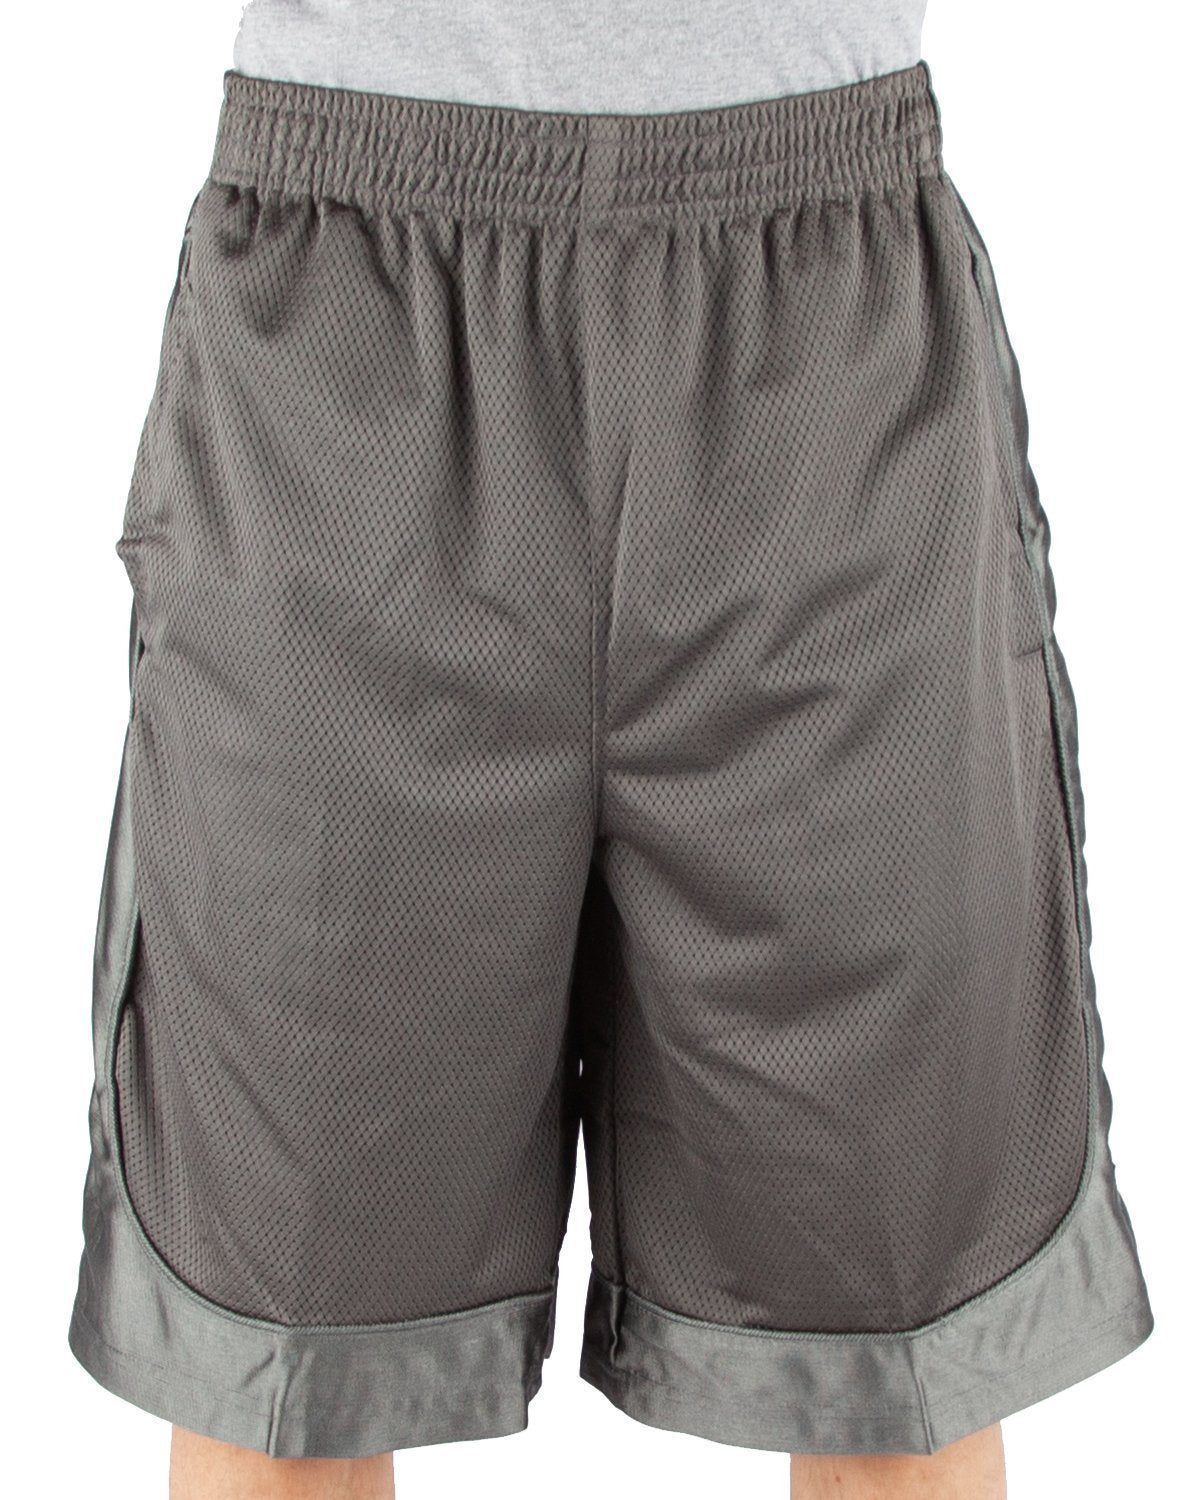 Mesh Shorts XL / Dark Grey